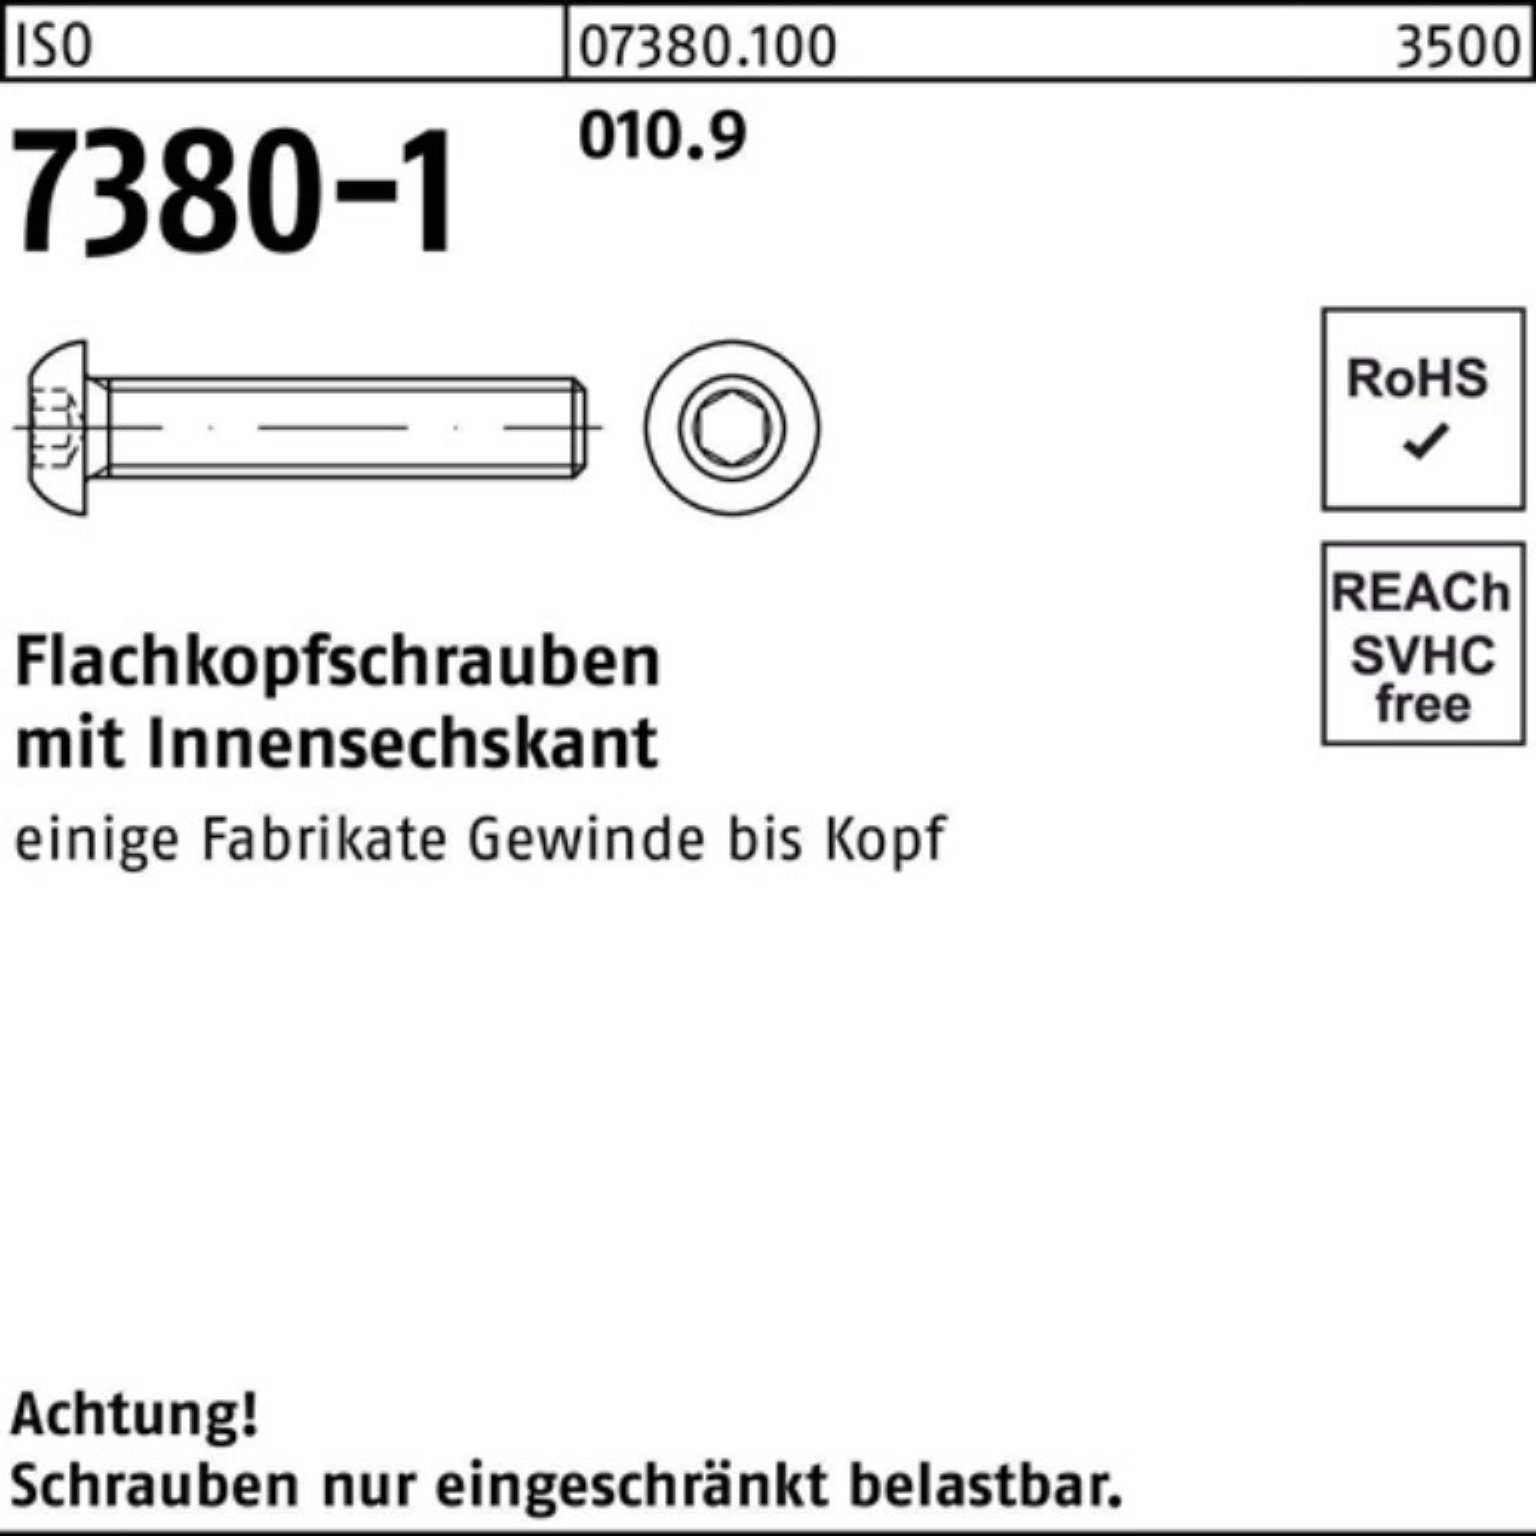 Reyher Schraube 200er Pack Flachkopfschraube Innen-6kt M8x 010.9 St 7380-1 ISO 200 45